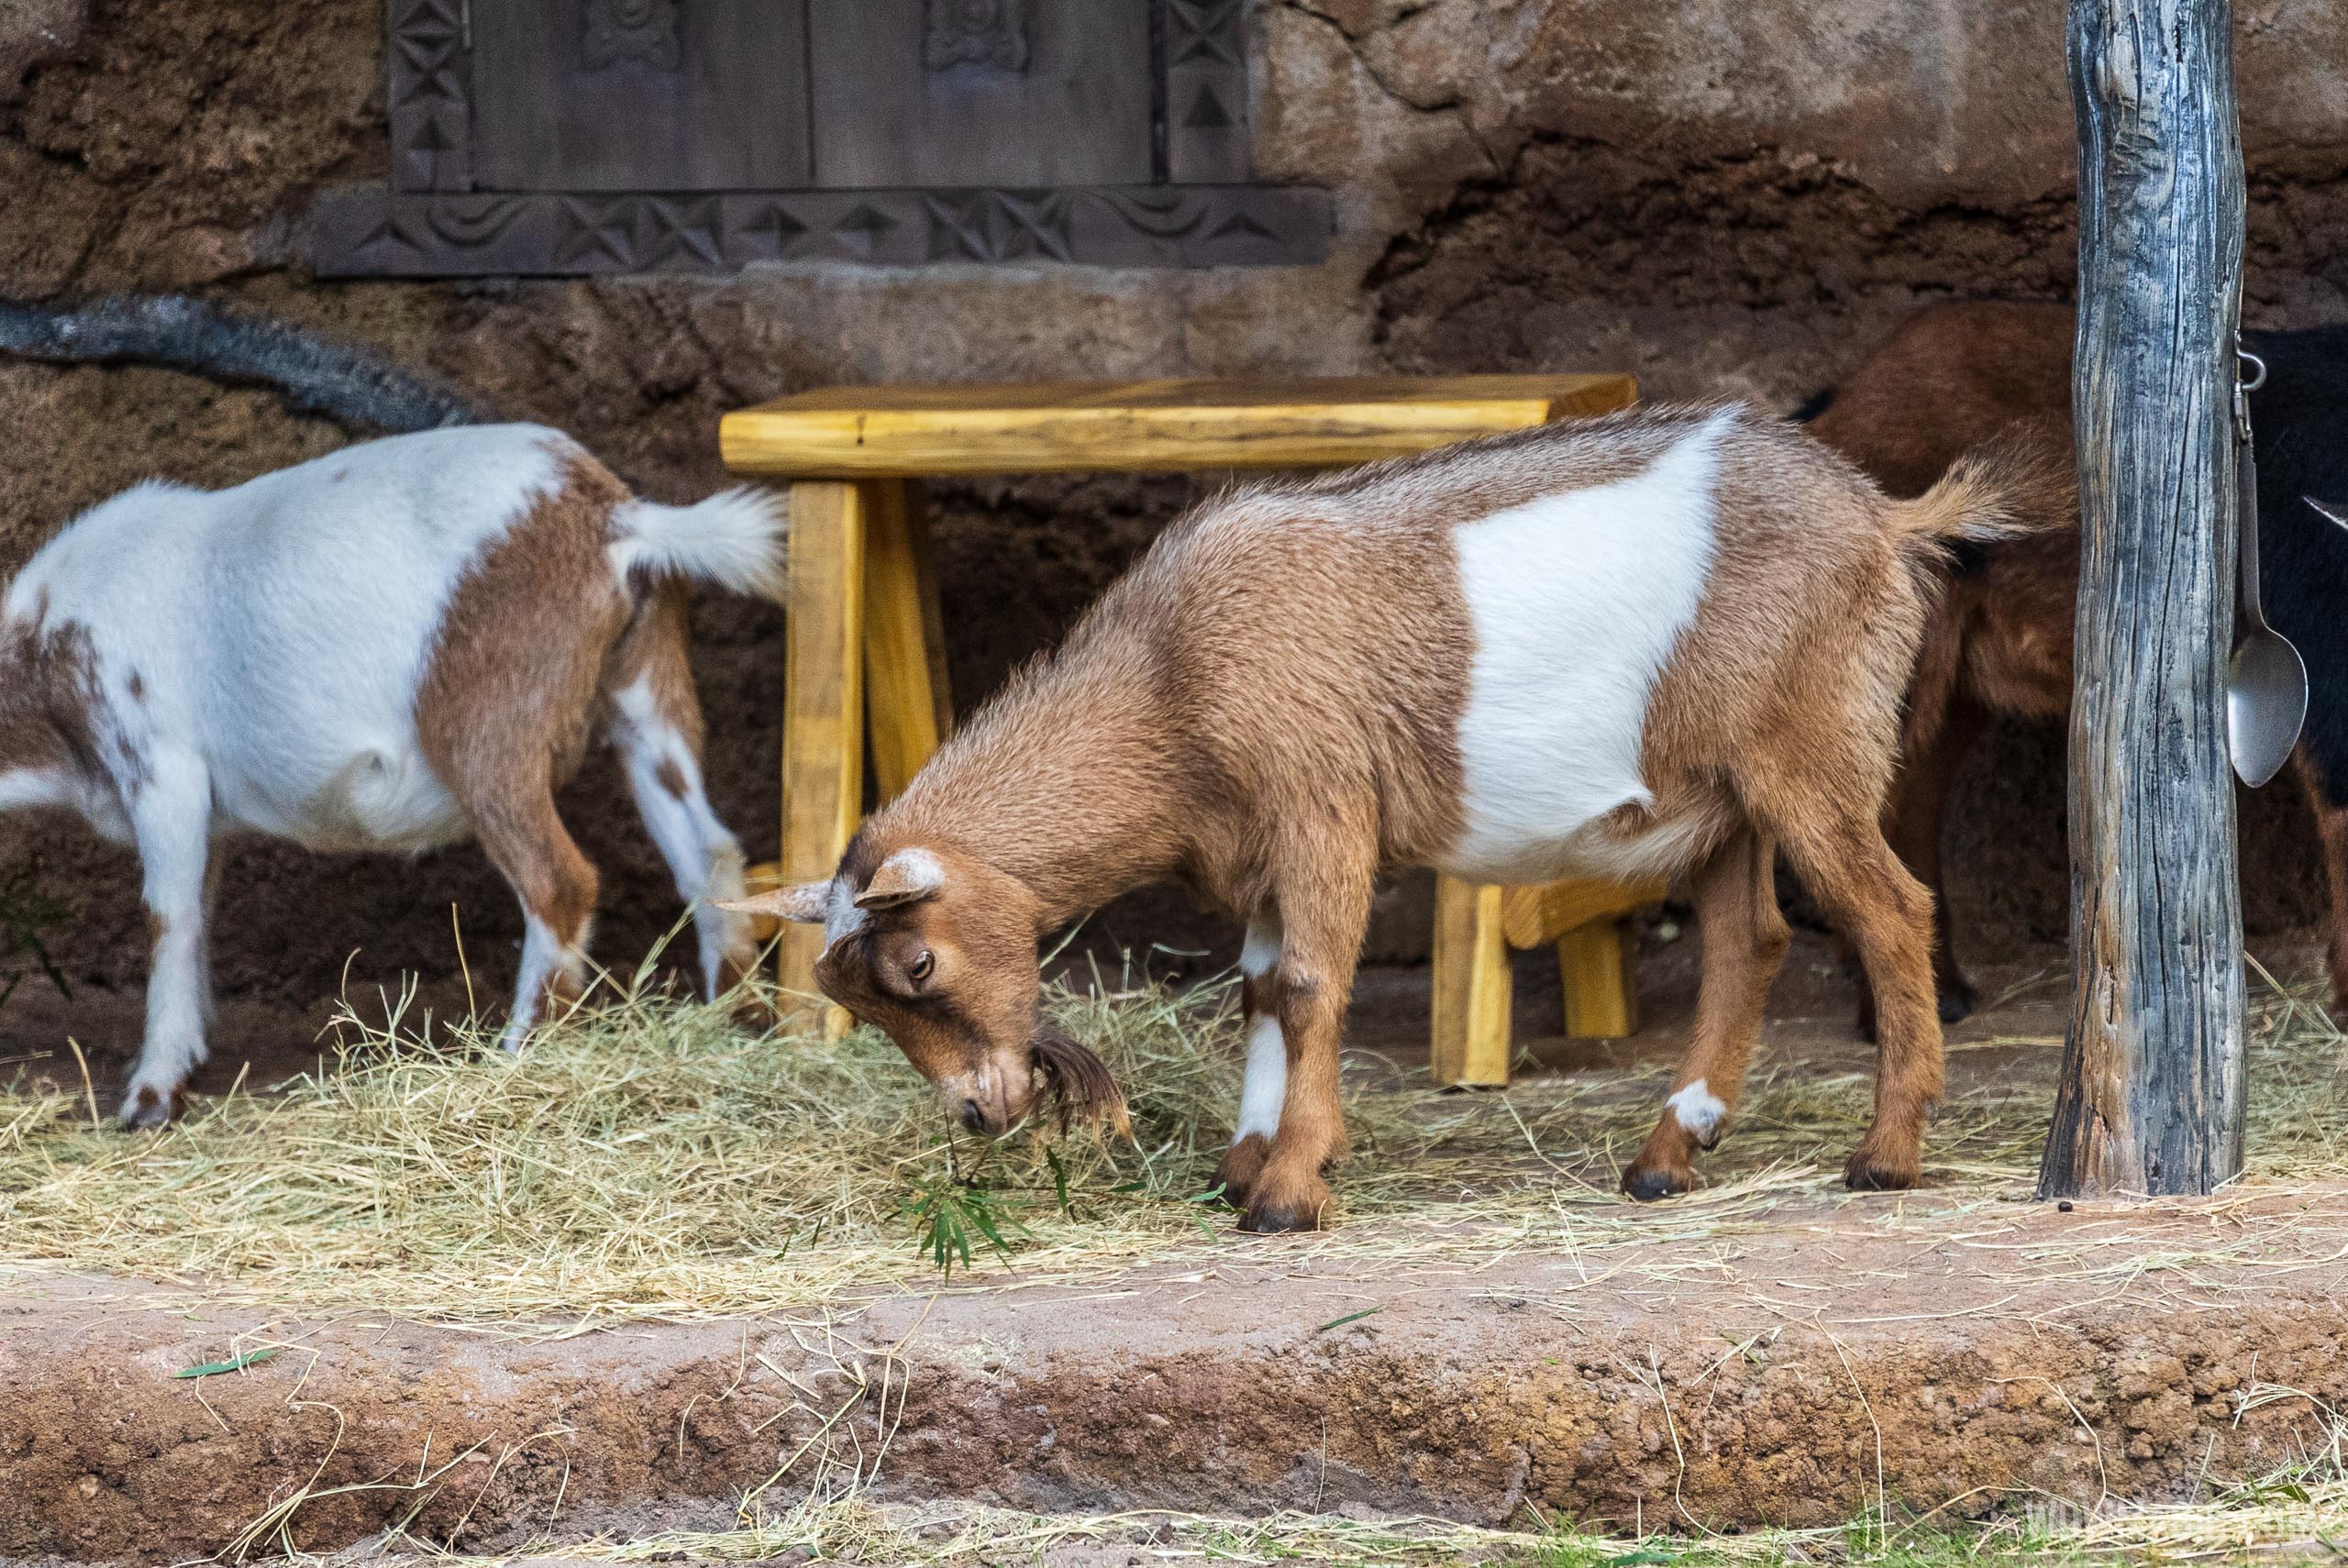 Nigerian Dwarf Goats join the new Warden Post scene at Kilimanjaro Safaris